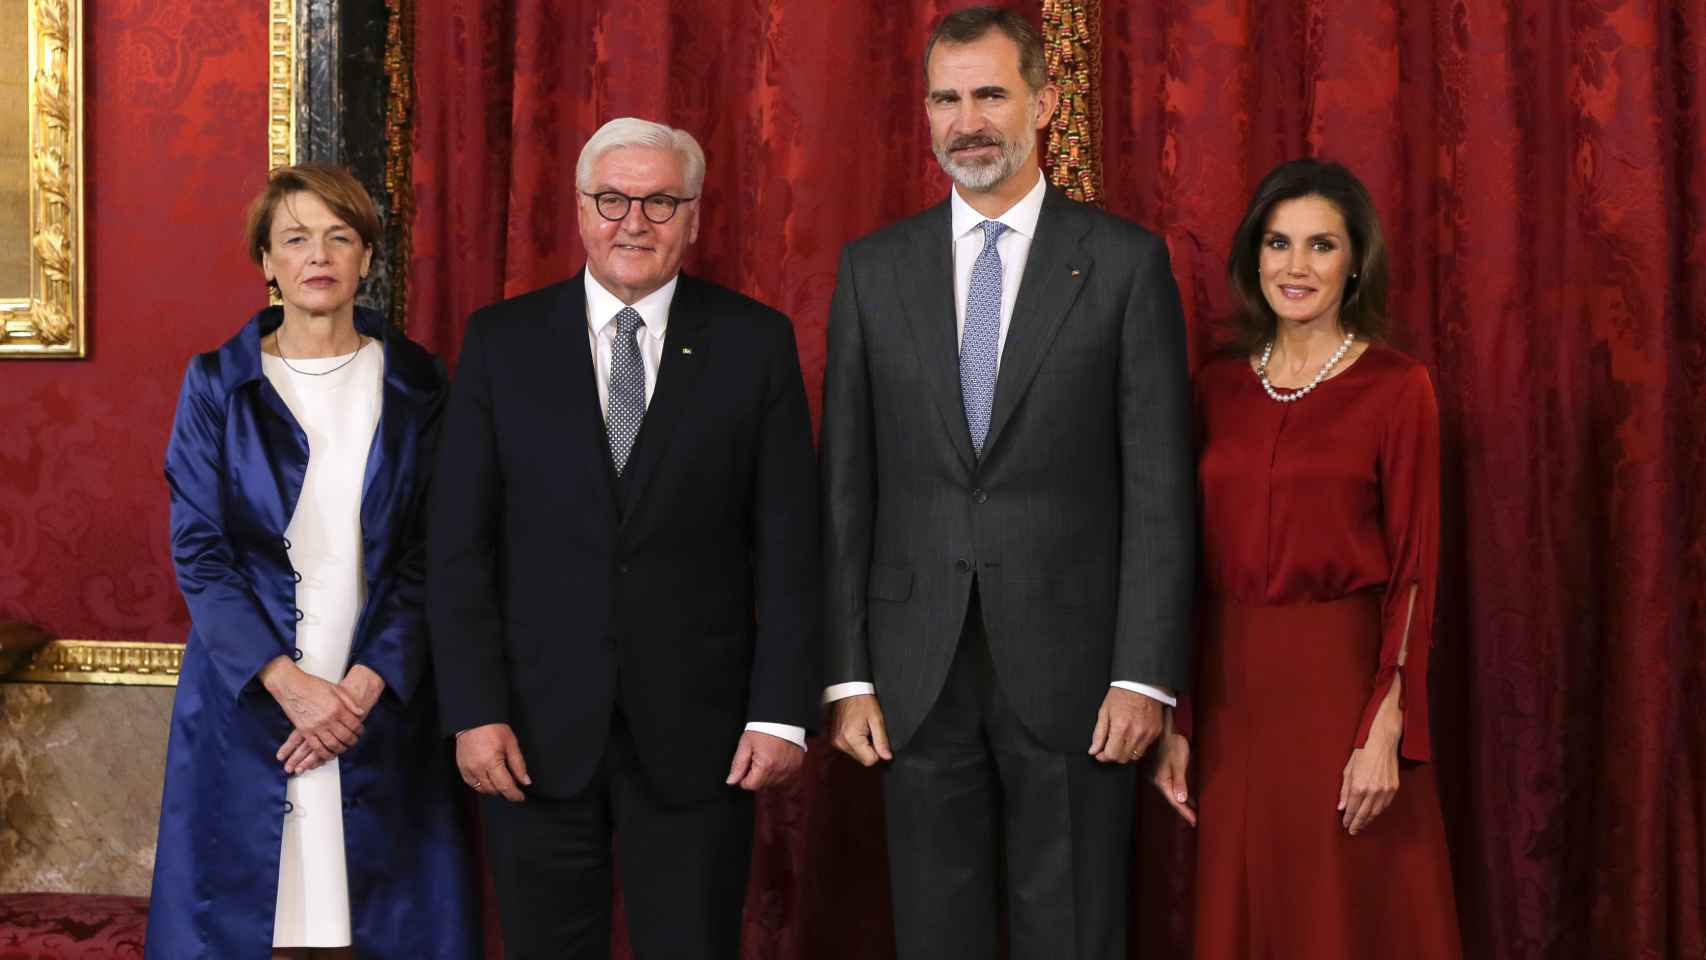 Los Reyes de España junto al presidente y la primera dama de Alemania.